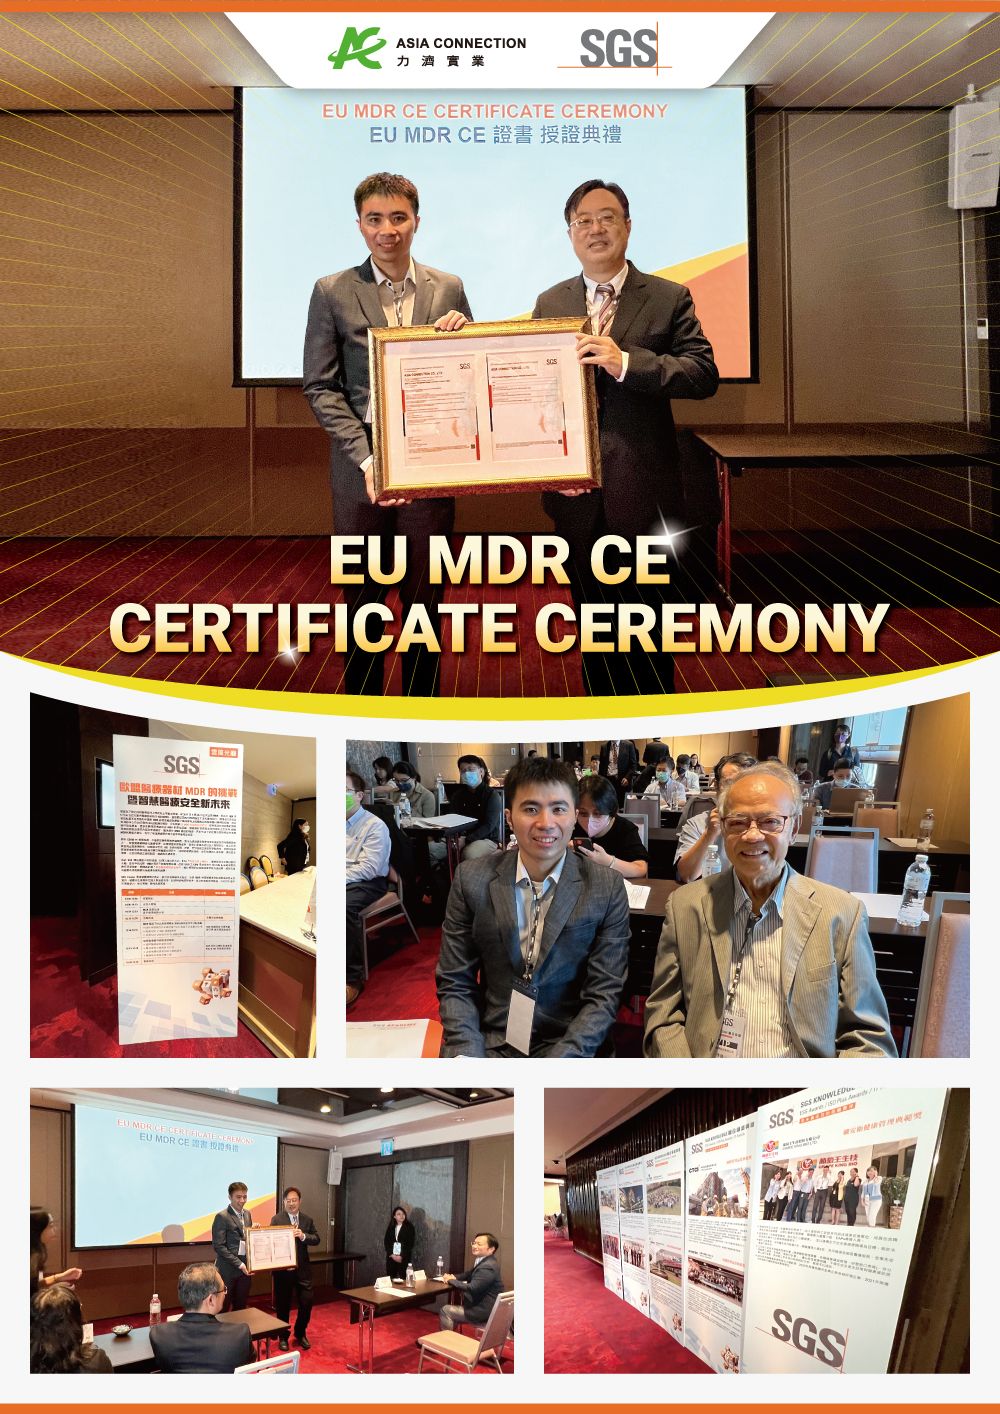 ME8202X- Zasilany Aspirator Nosowy od Asia Connection uzyskuje certyfikat CE zgodnie z Rozporządzeniem w sprawie Wyrobów Medycznych (MDR) UE 2017/745